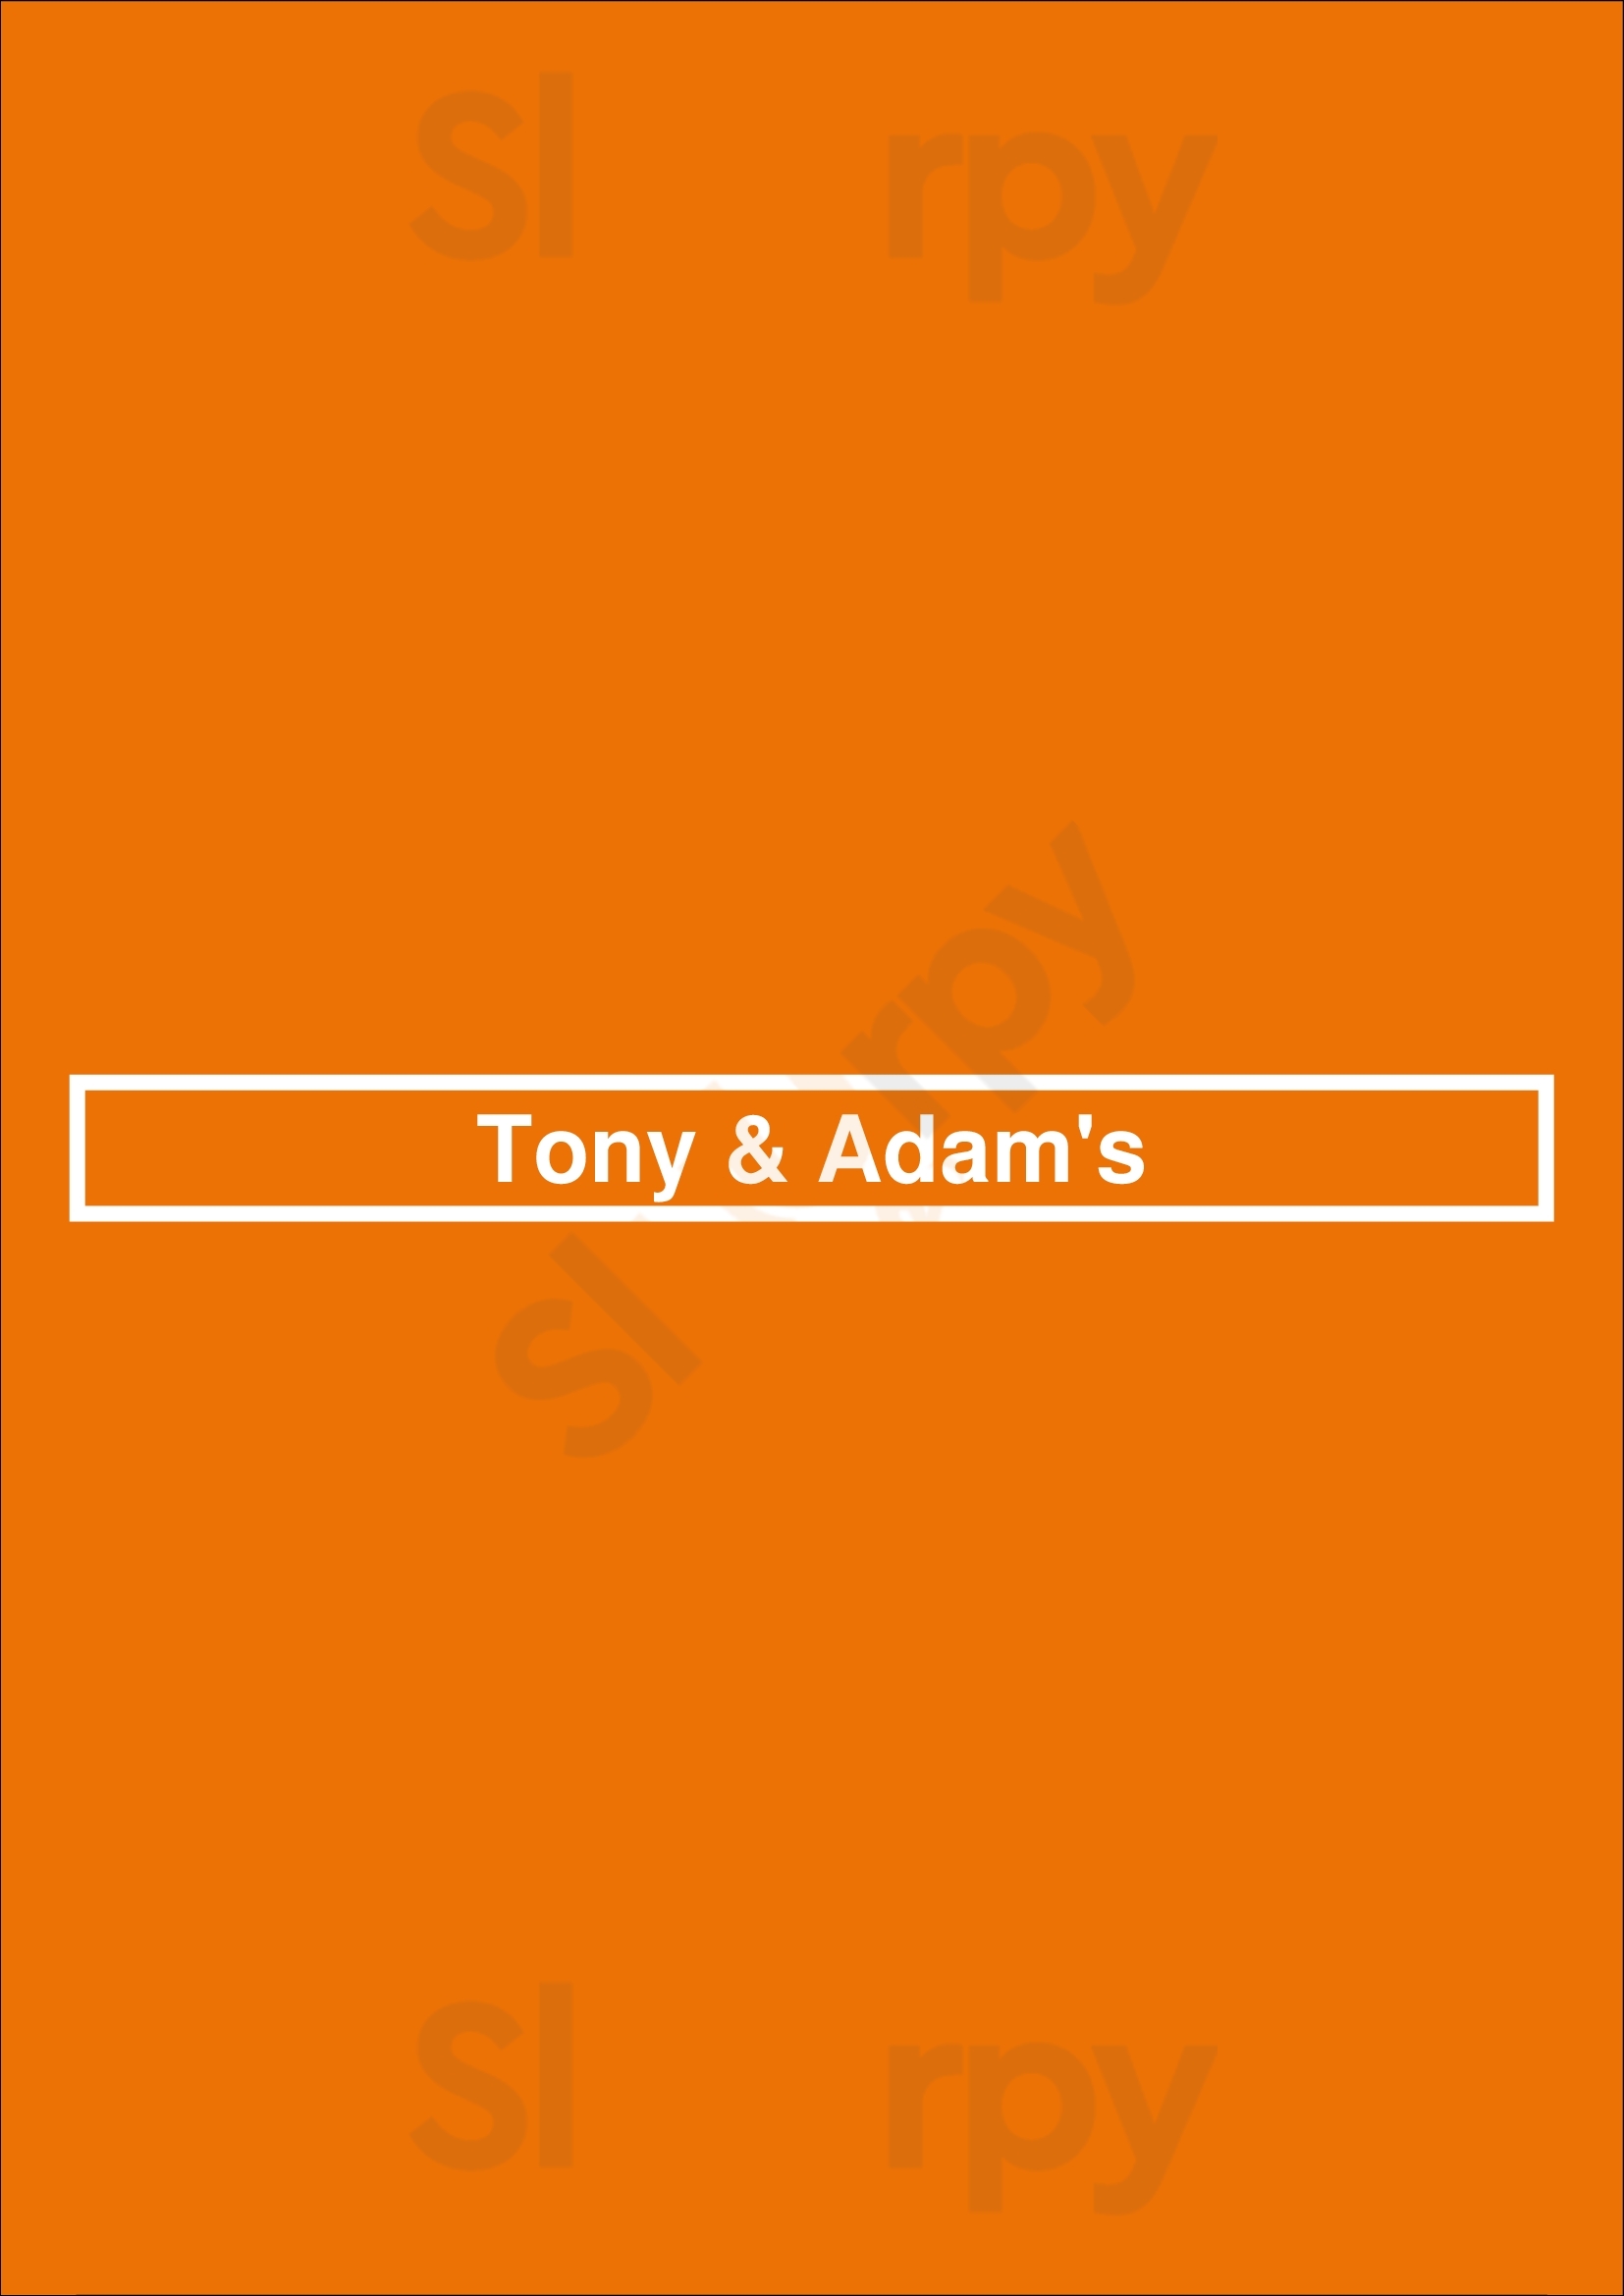 Tony & Adam's Thunder Bay Menu - 1